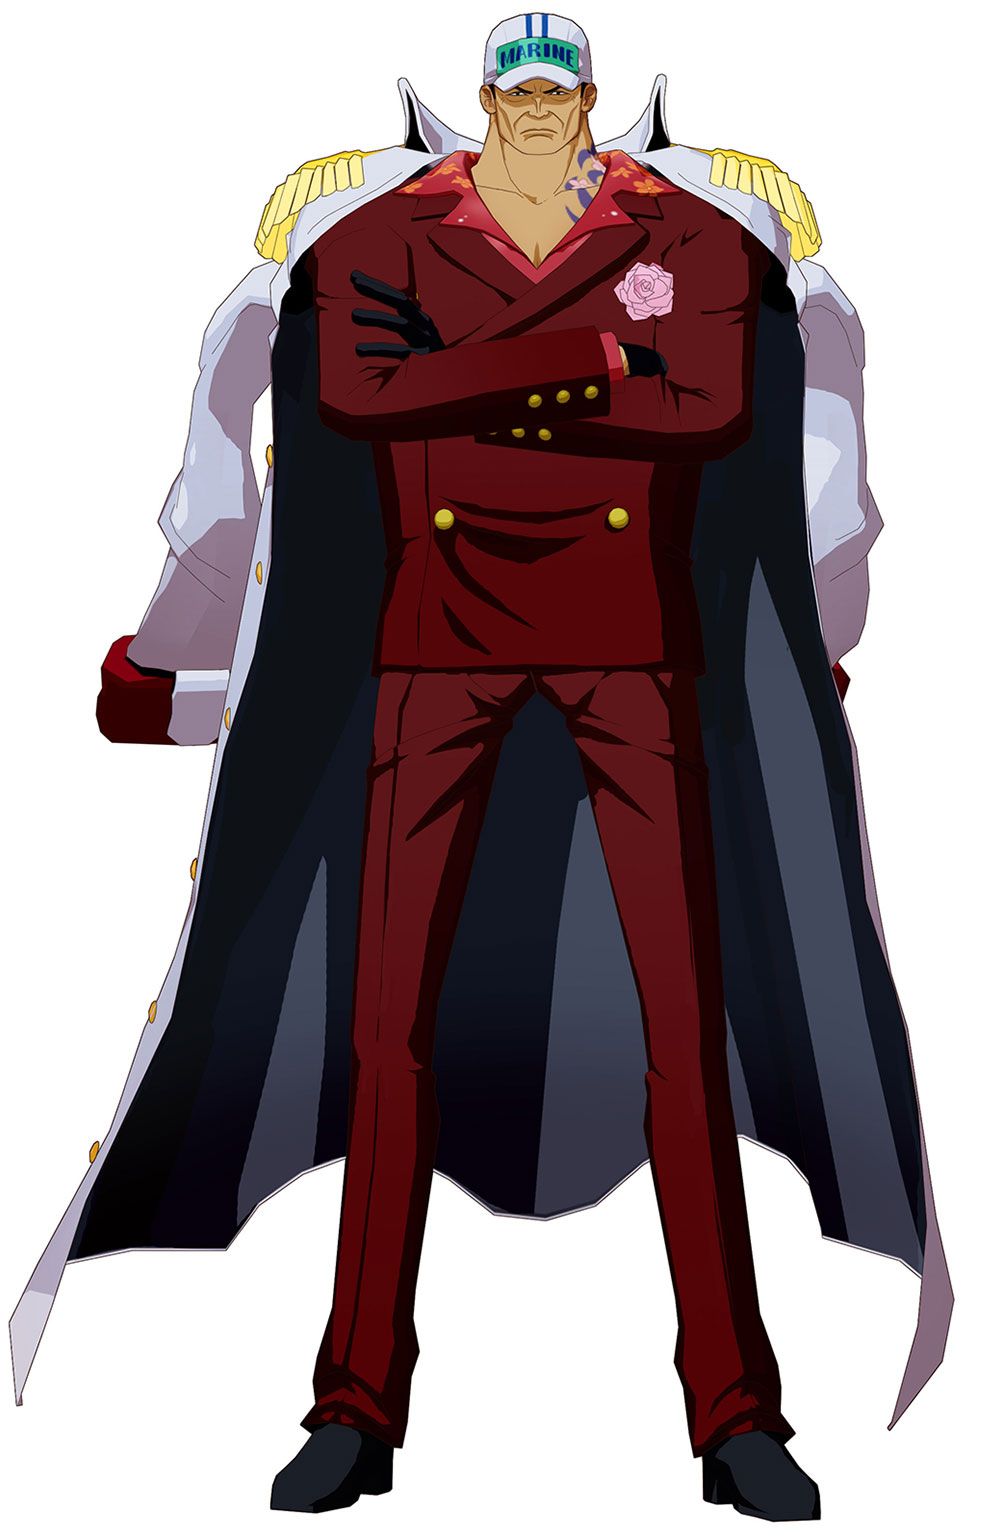 Sakazuki: Sakazuki - còn được biết đến là Kizaru - là một trong những đại tướng hàng đầu của Đế quốc Marines trong One Piece. Hãy xem những bức ảnh về Sakazuki, một nhân vật cực kỳ bá đạo và quyền lực, với khả năng sử dụng Năng lượng Băng và Năng lượng Ánh sáng.